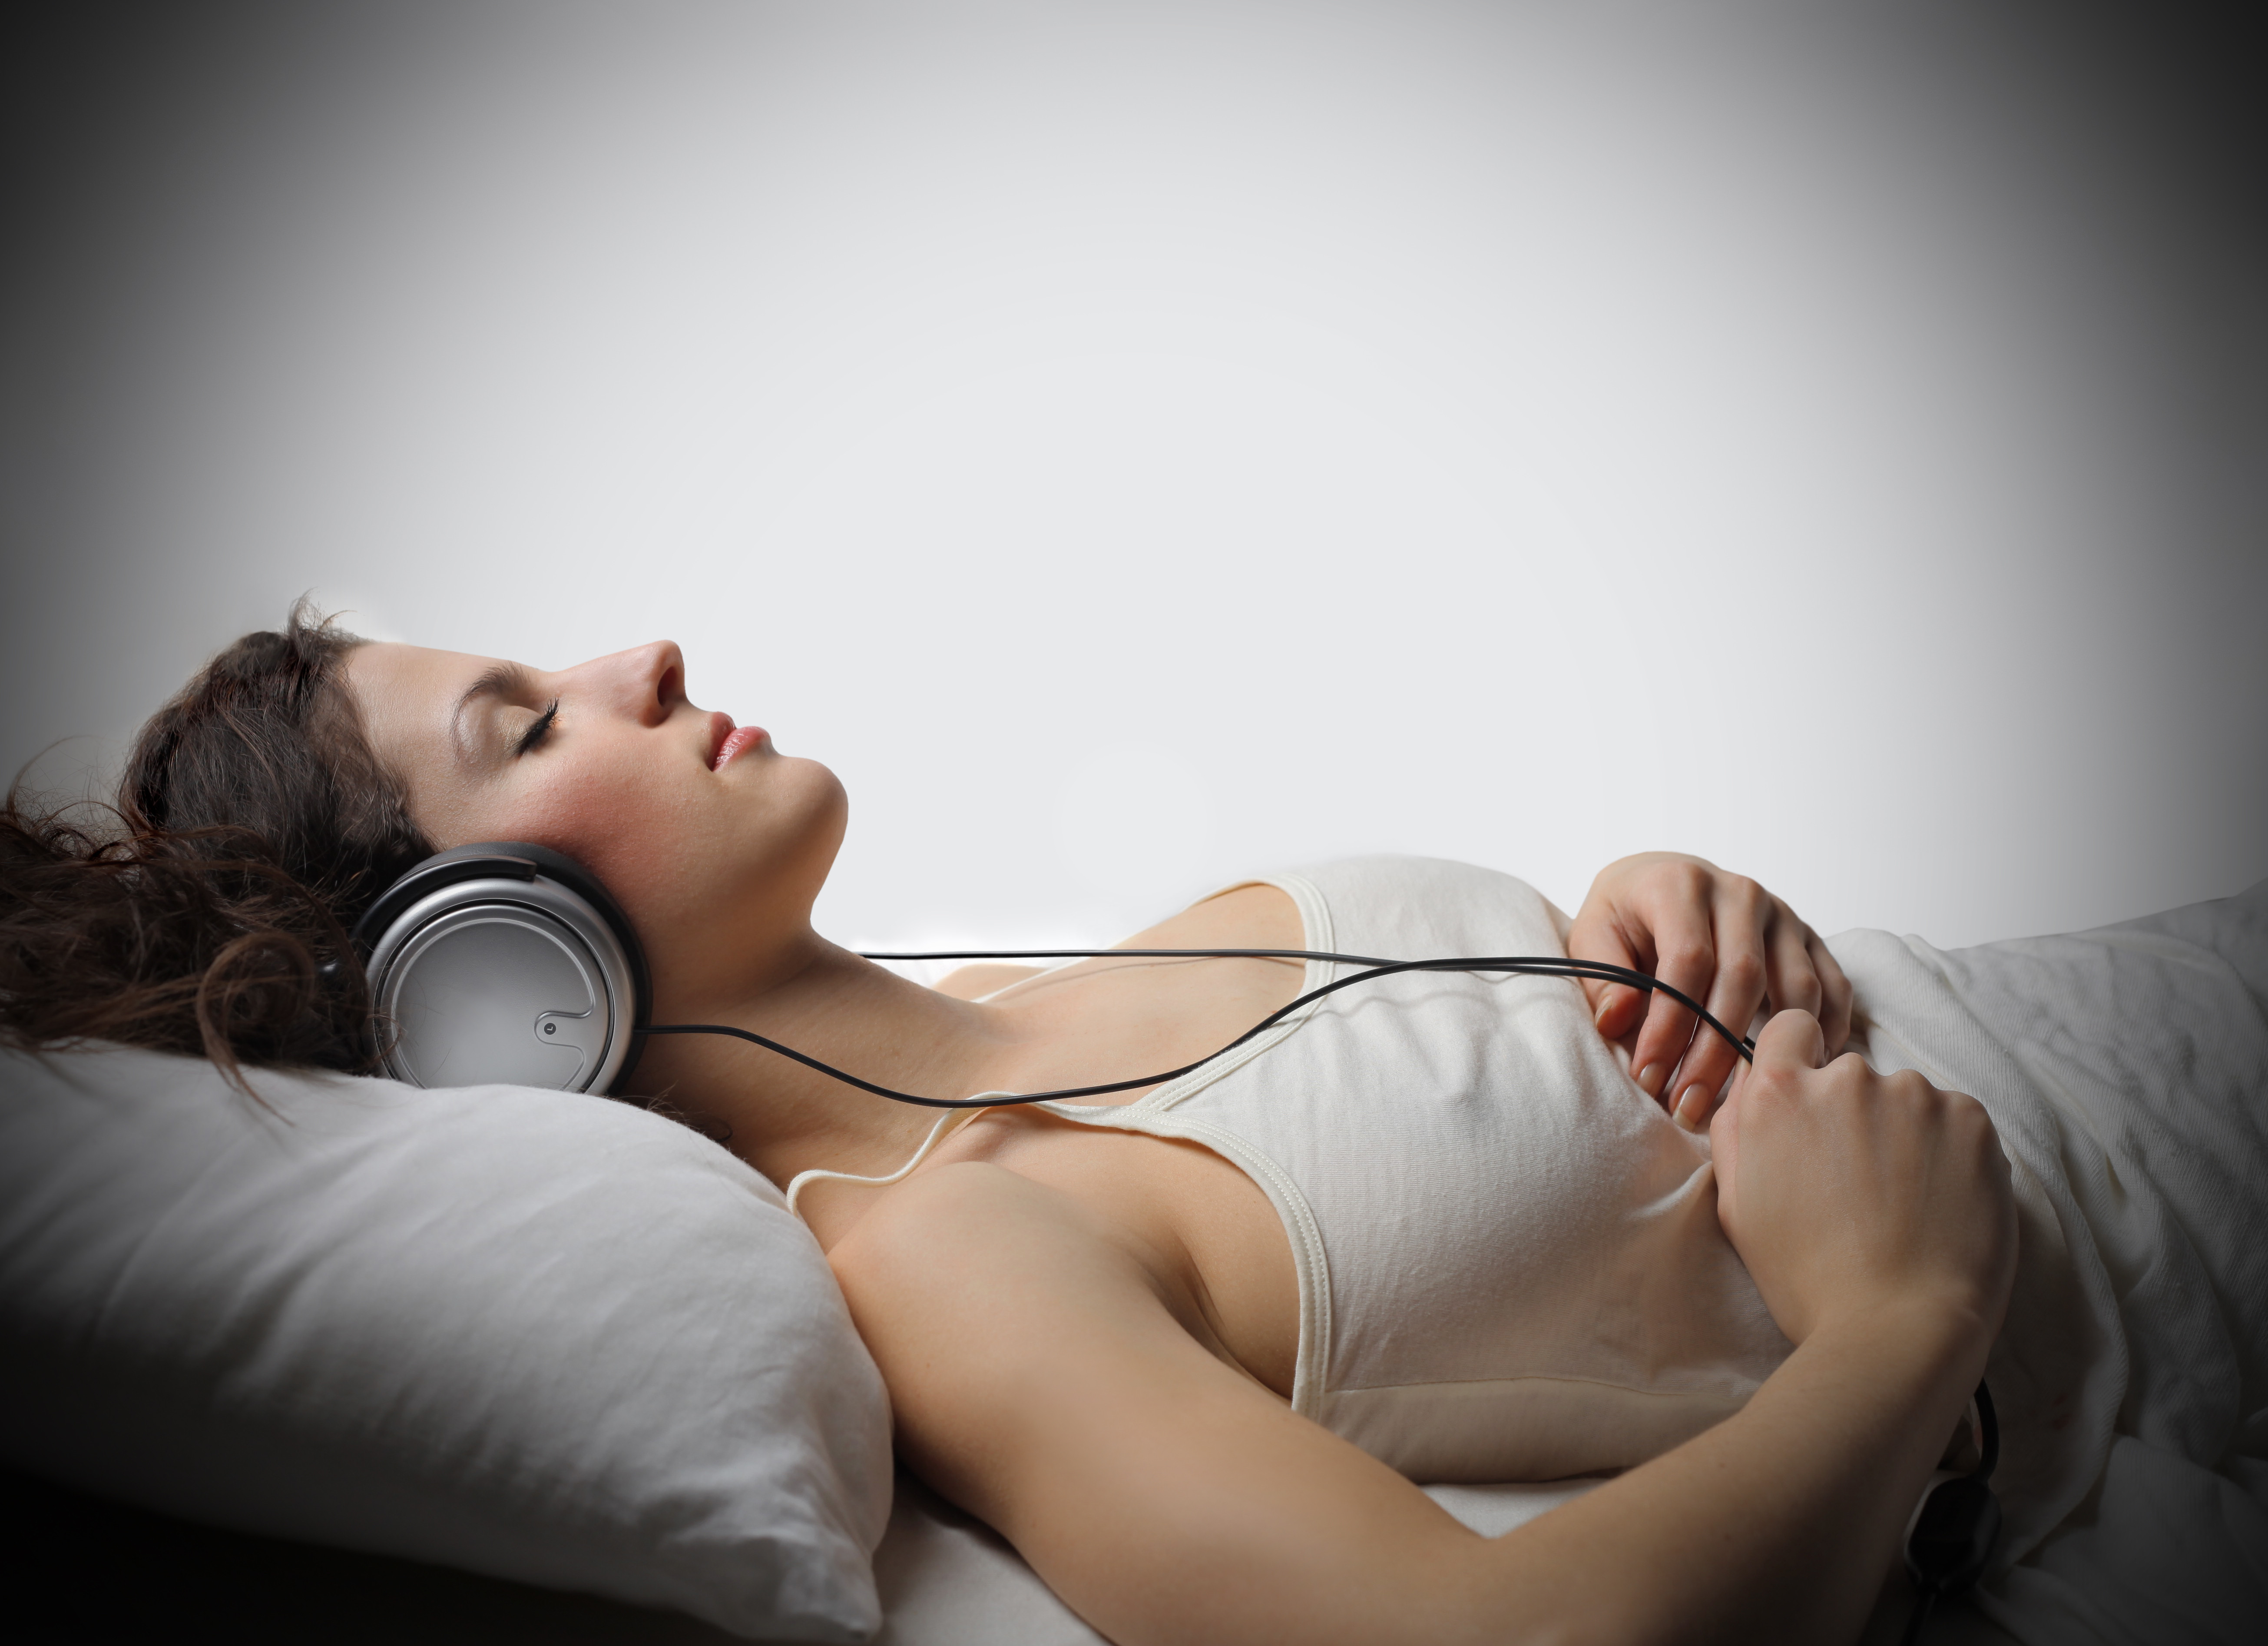 Хорошие песни на ночь слушать. Медитация в наушниках. Девушка в наушниках отдыхает. Музыкотерапия во сне.